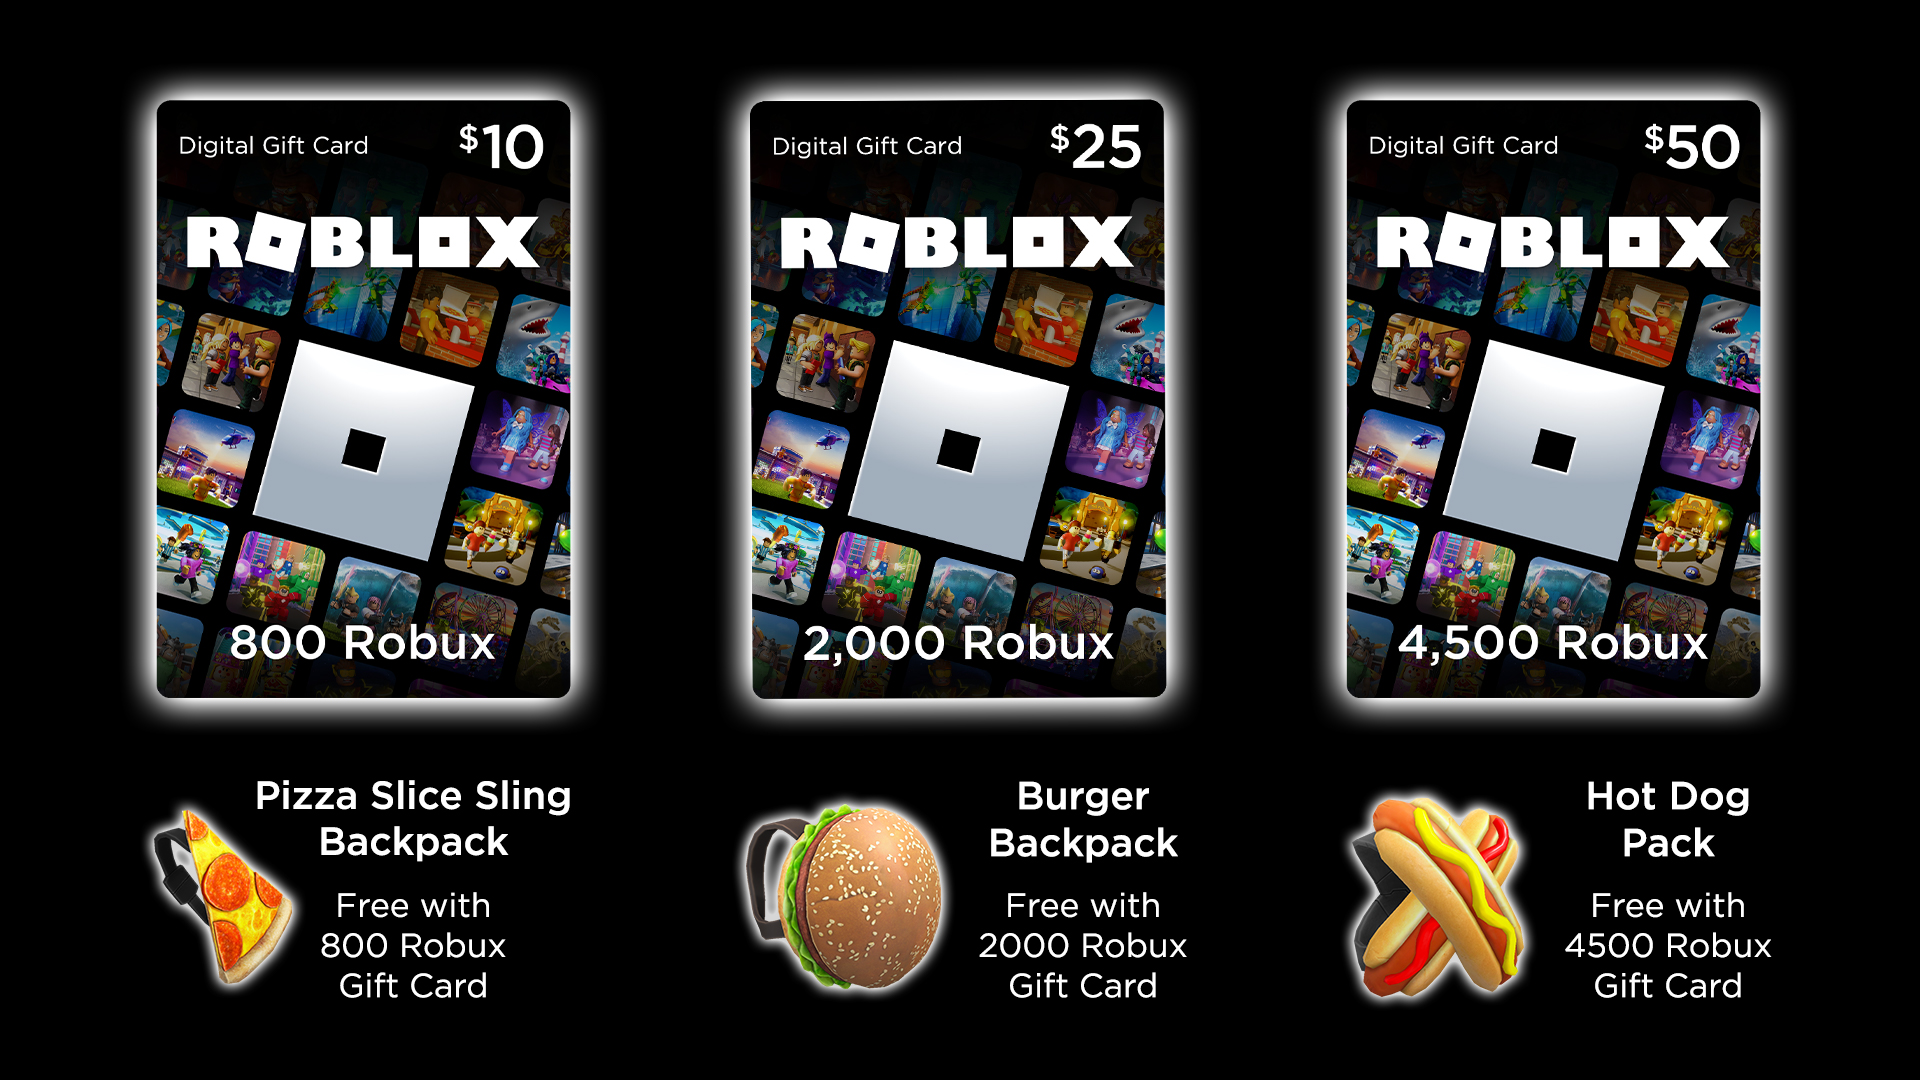 Prime Roblox Reward 2022 : Roblox Prime Gaming Redeem